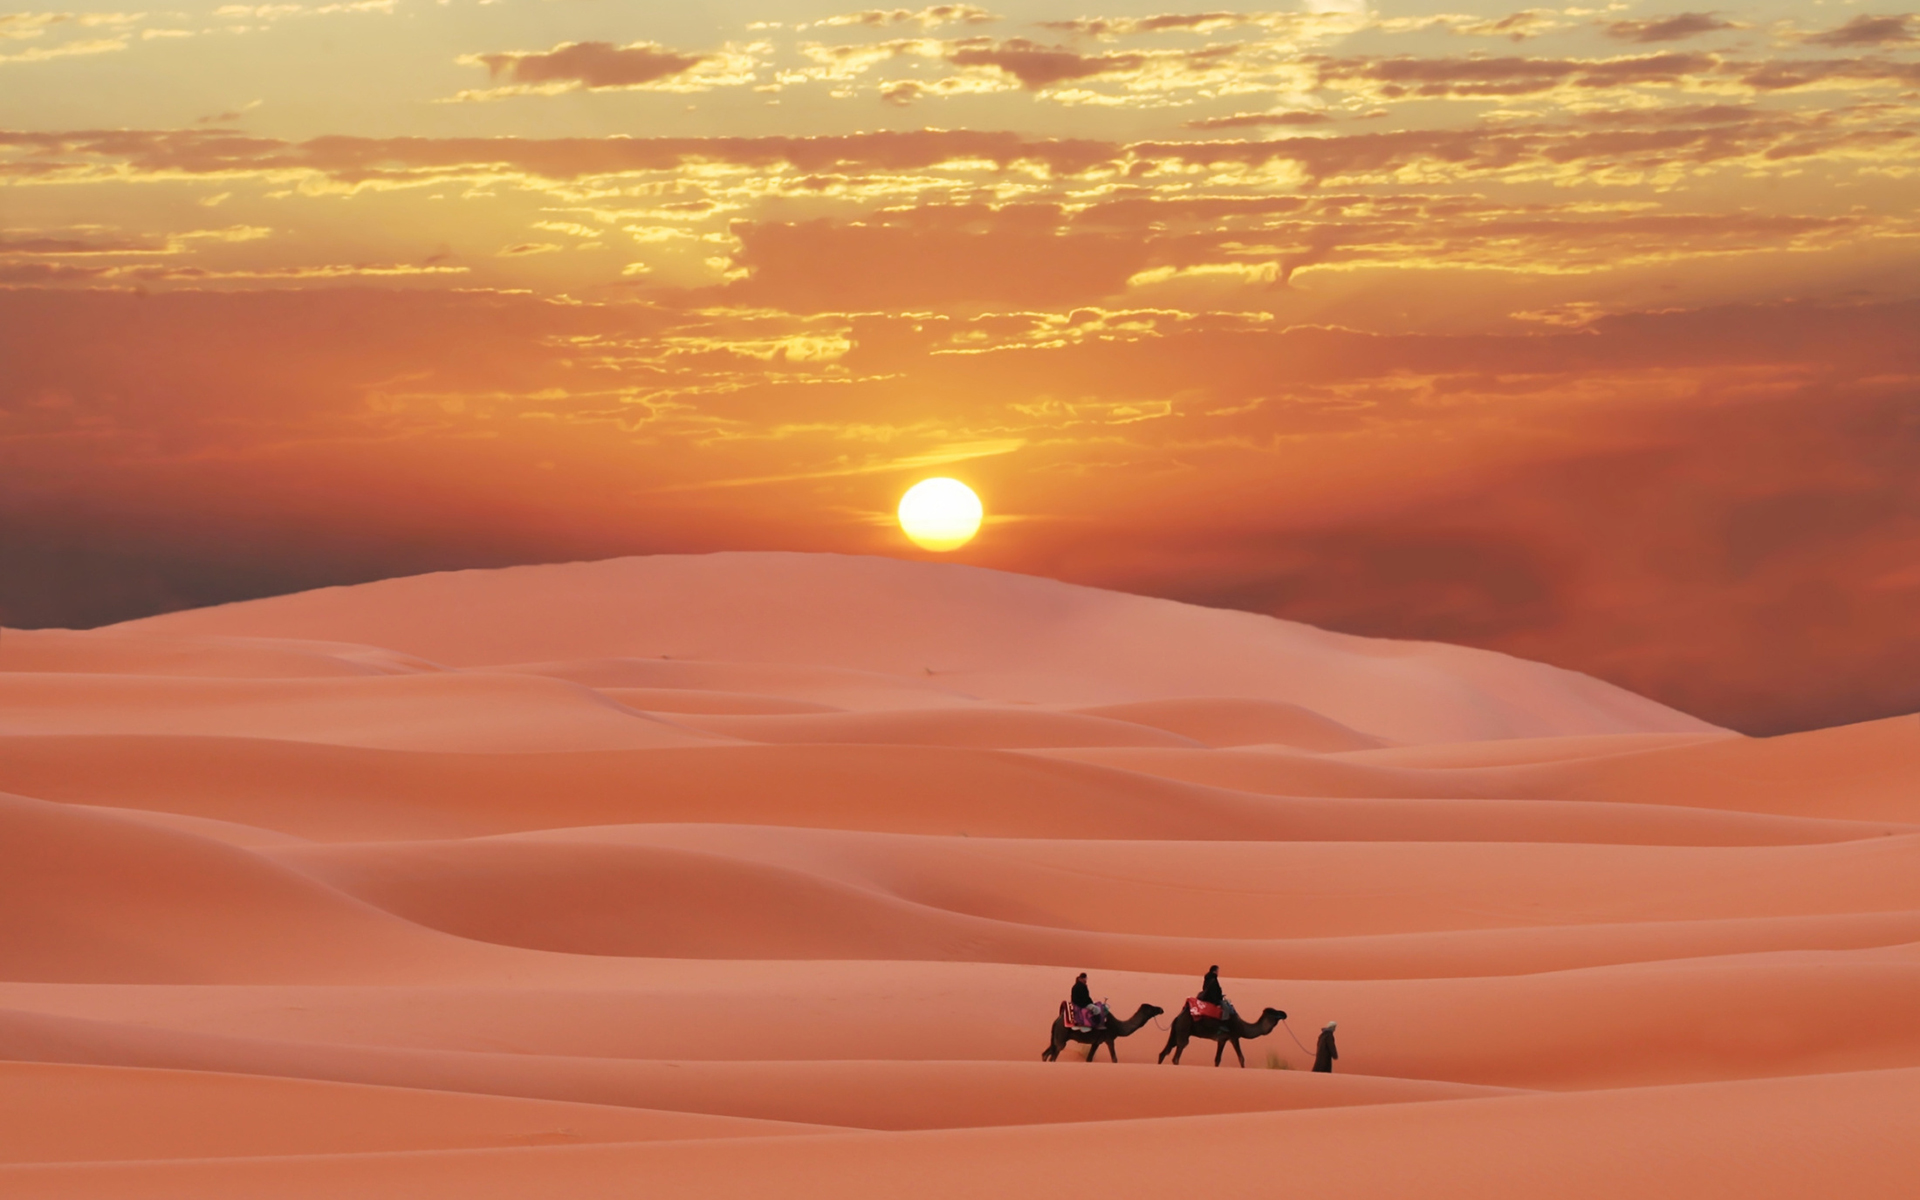 Desert evening sun